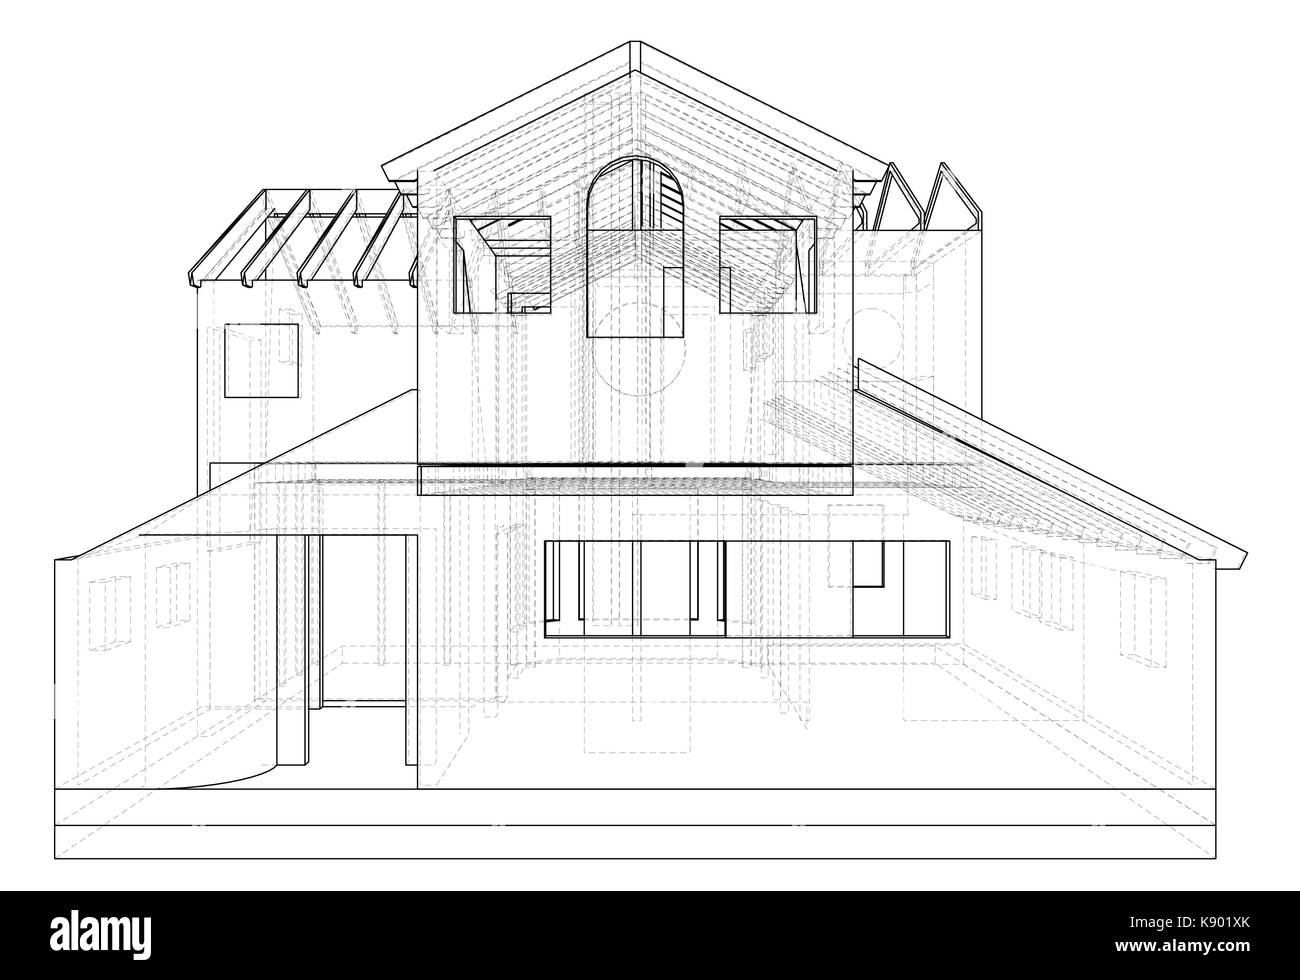 Arquitectura de la casa Imágenes de stock en blanco y negro - Página 3 -  Alamy